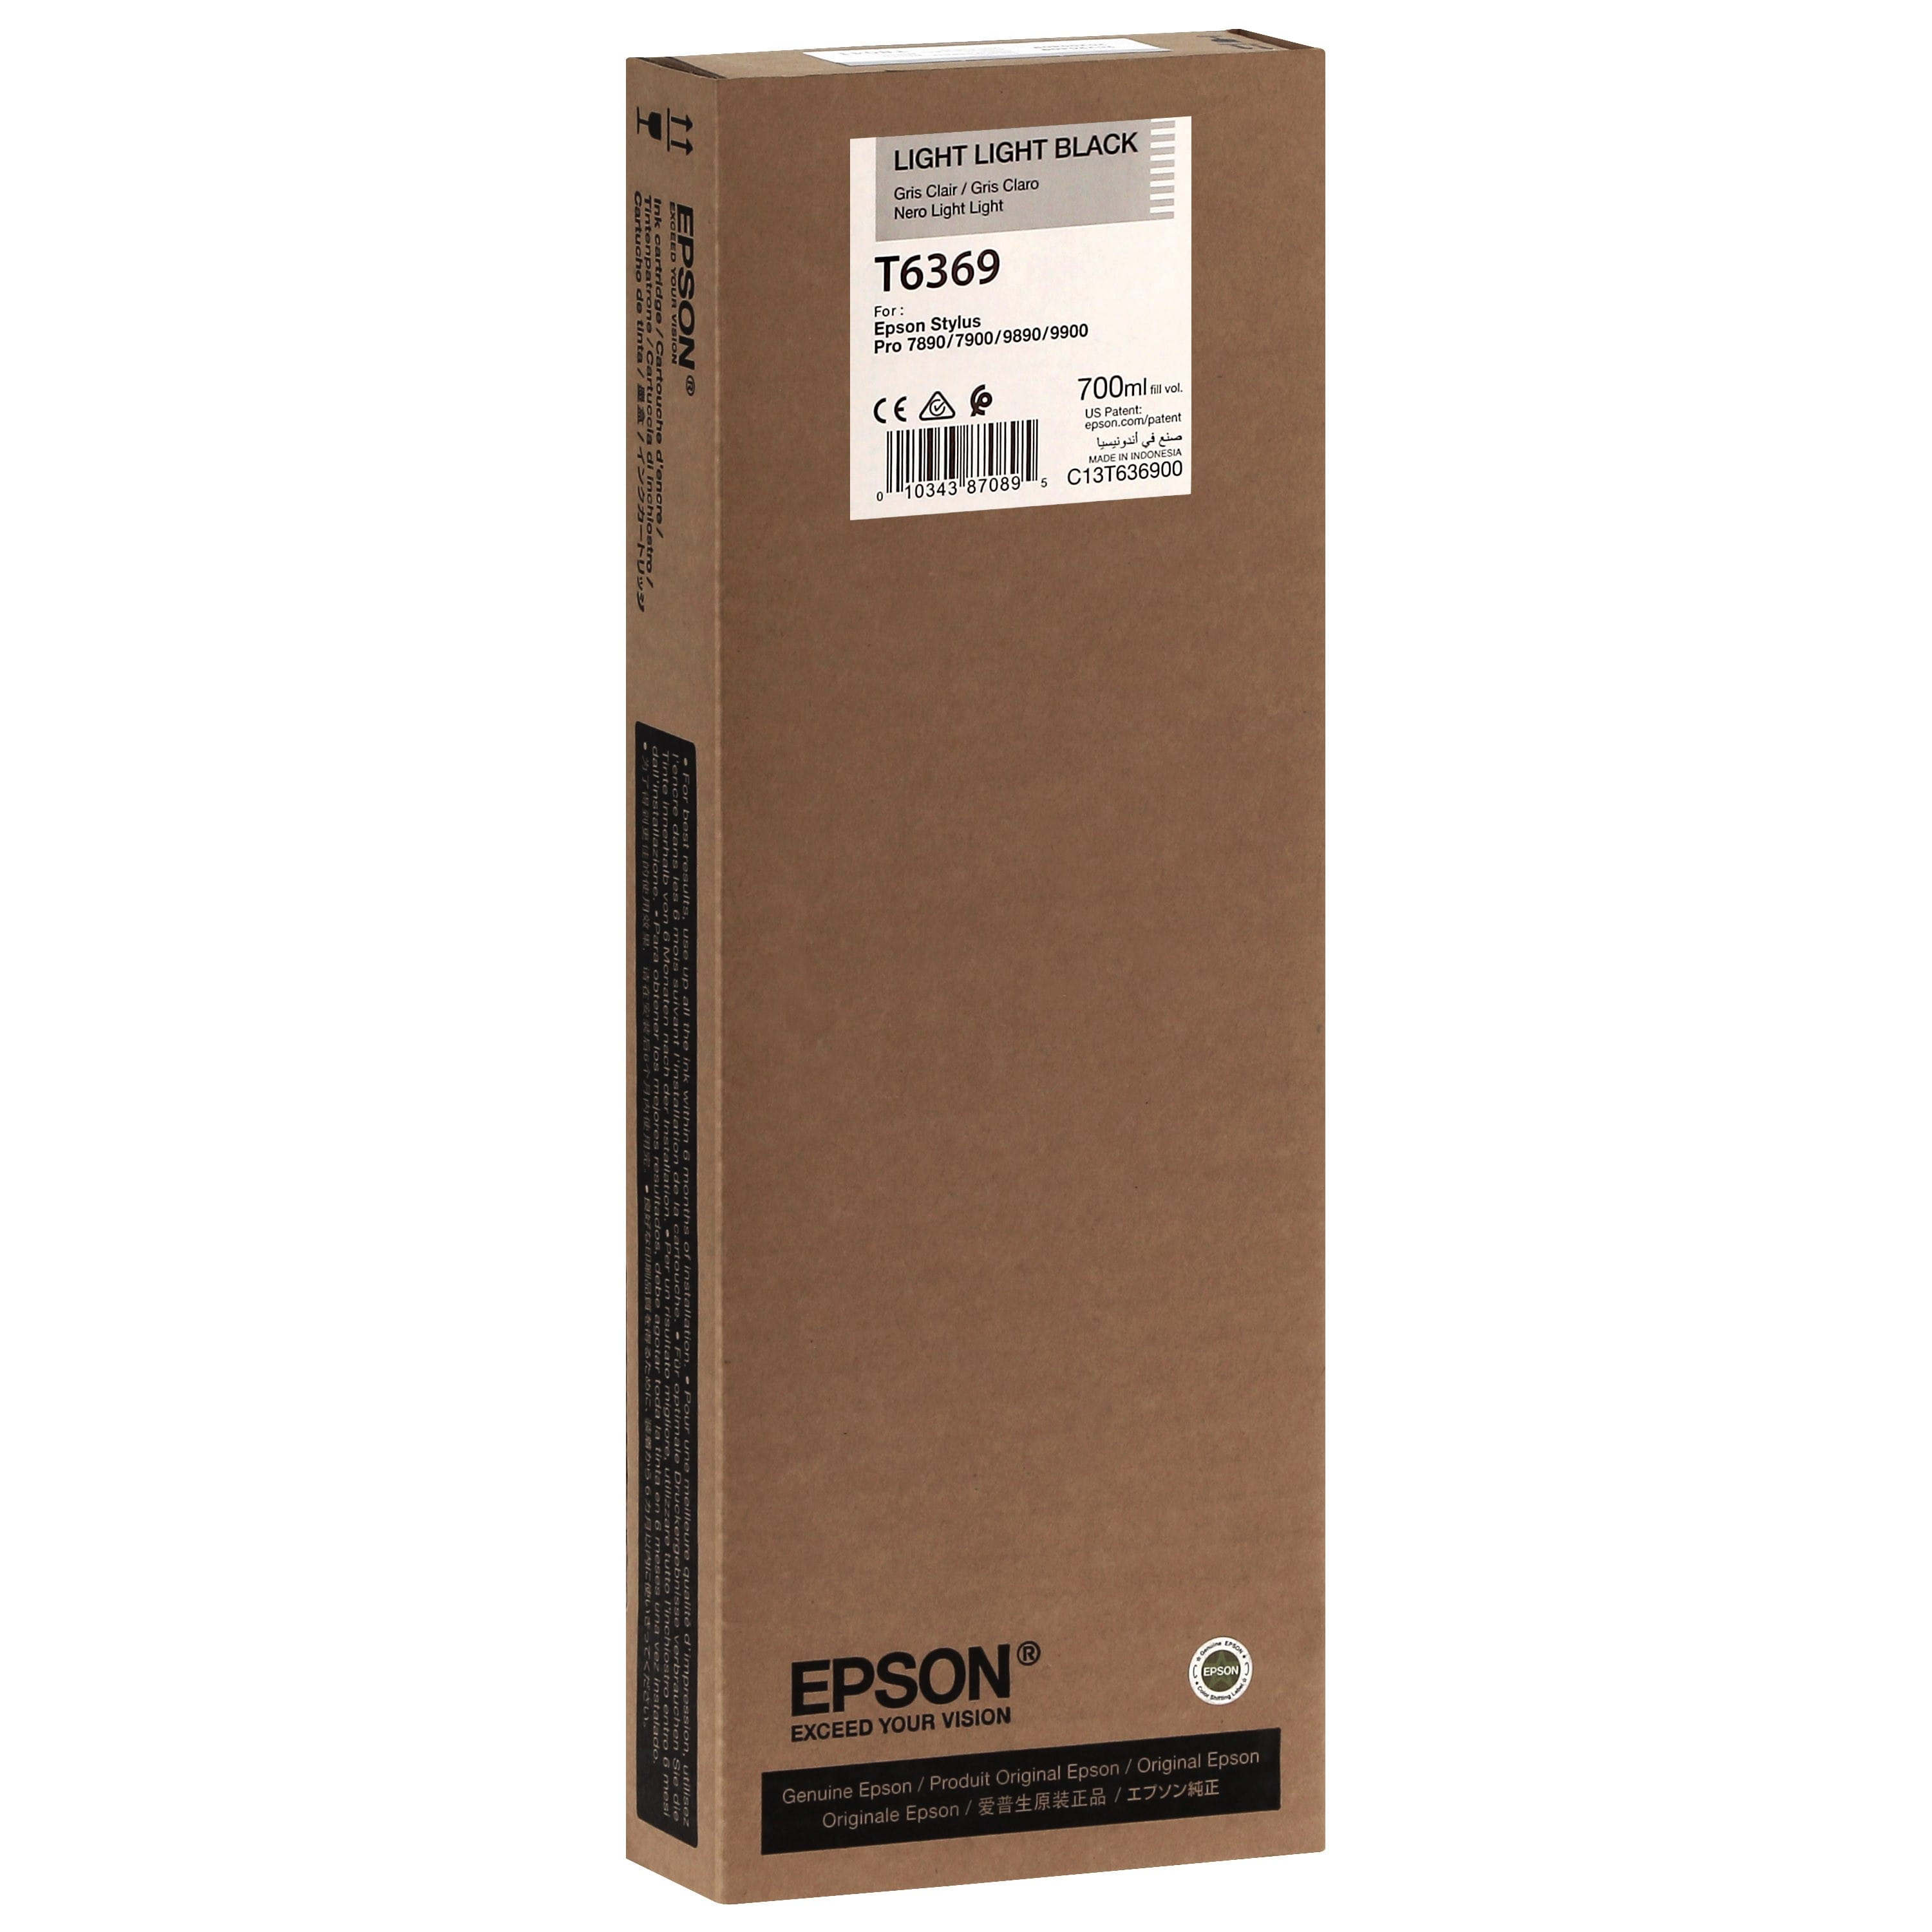 EPSON - Cartouche d'encre traceur T6369 Pour imprimante 7890/9890/7900/9900 Gris clair - 700ml